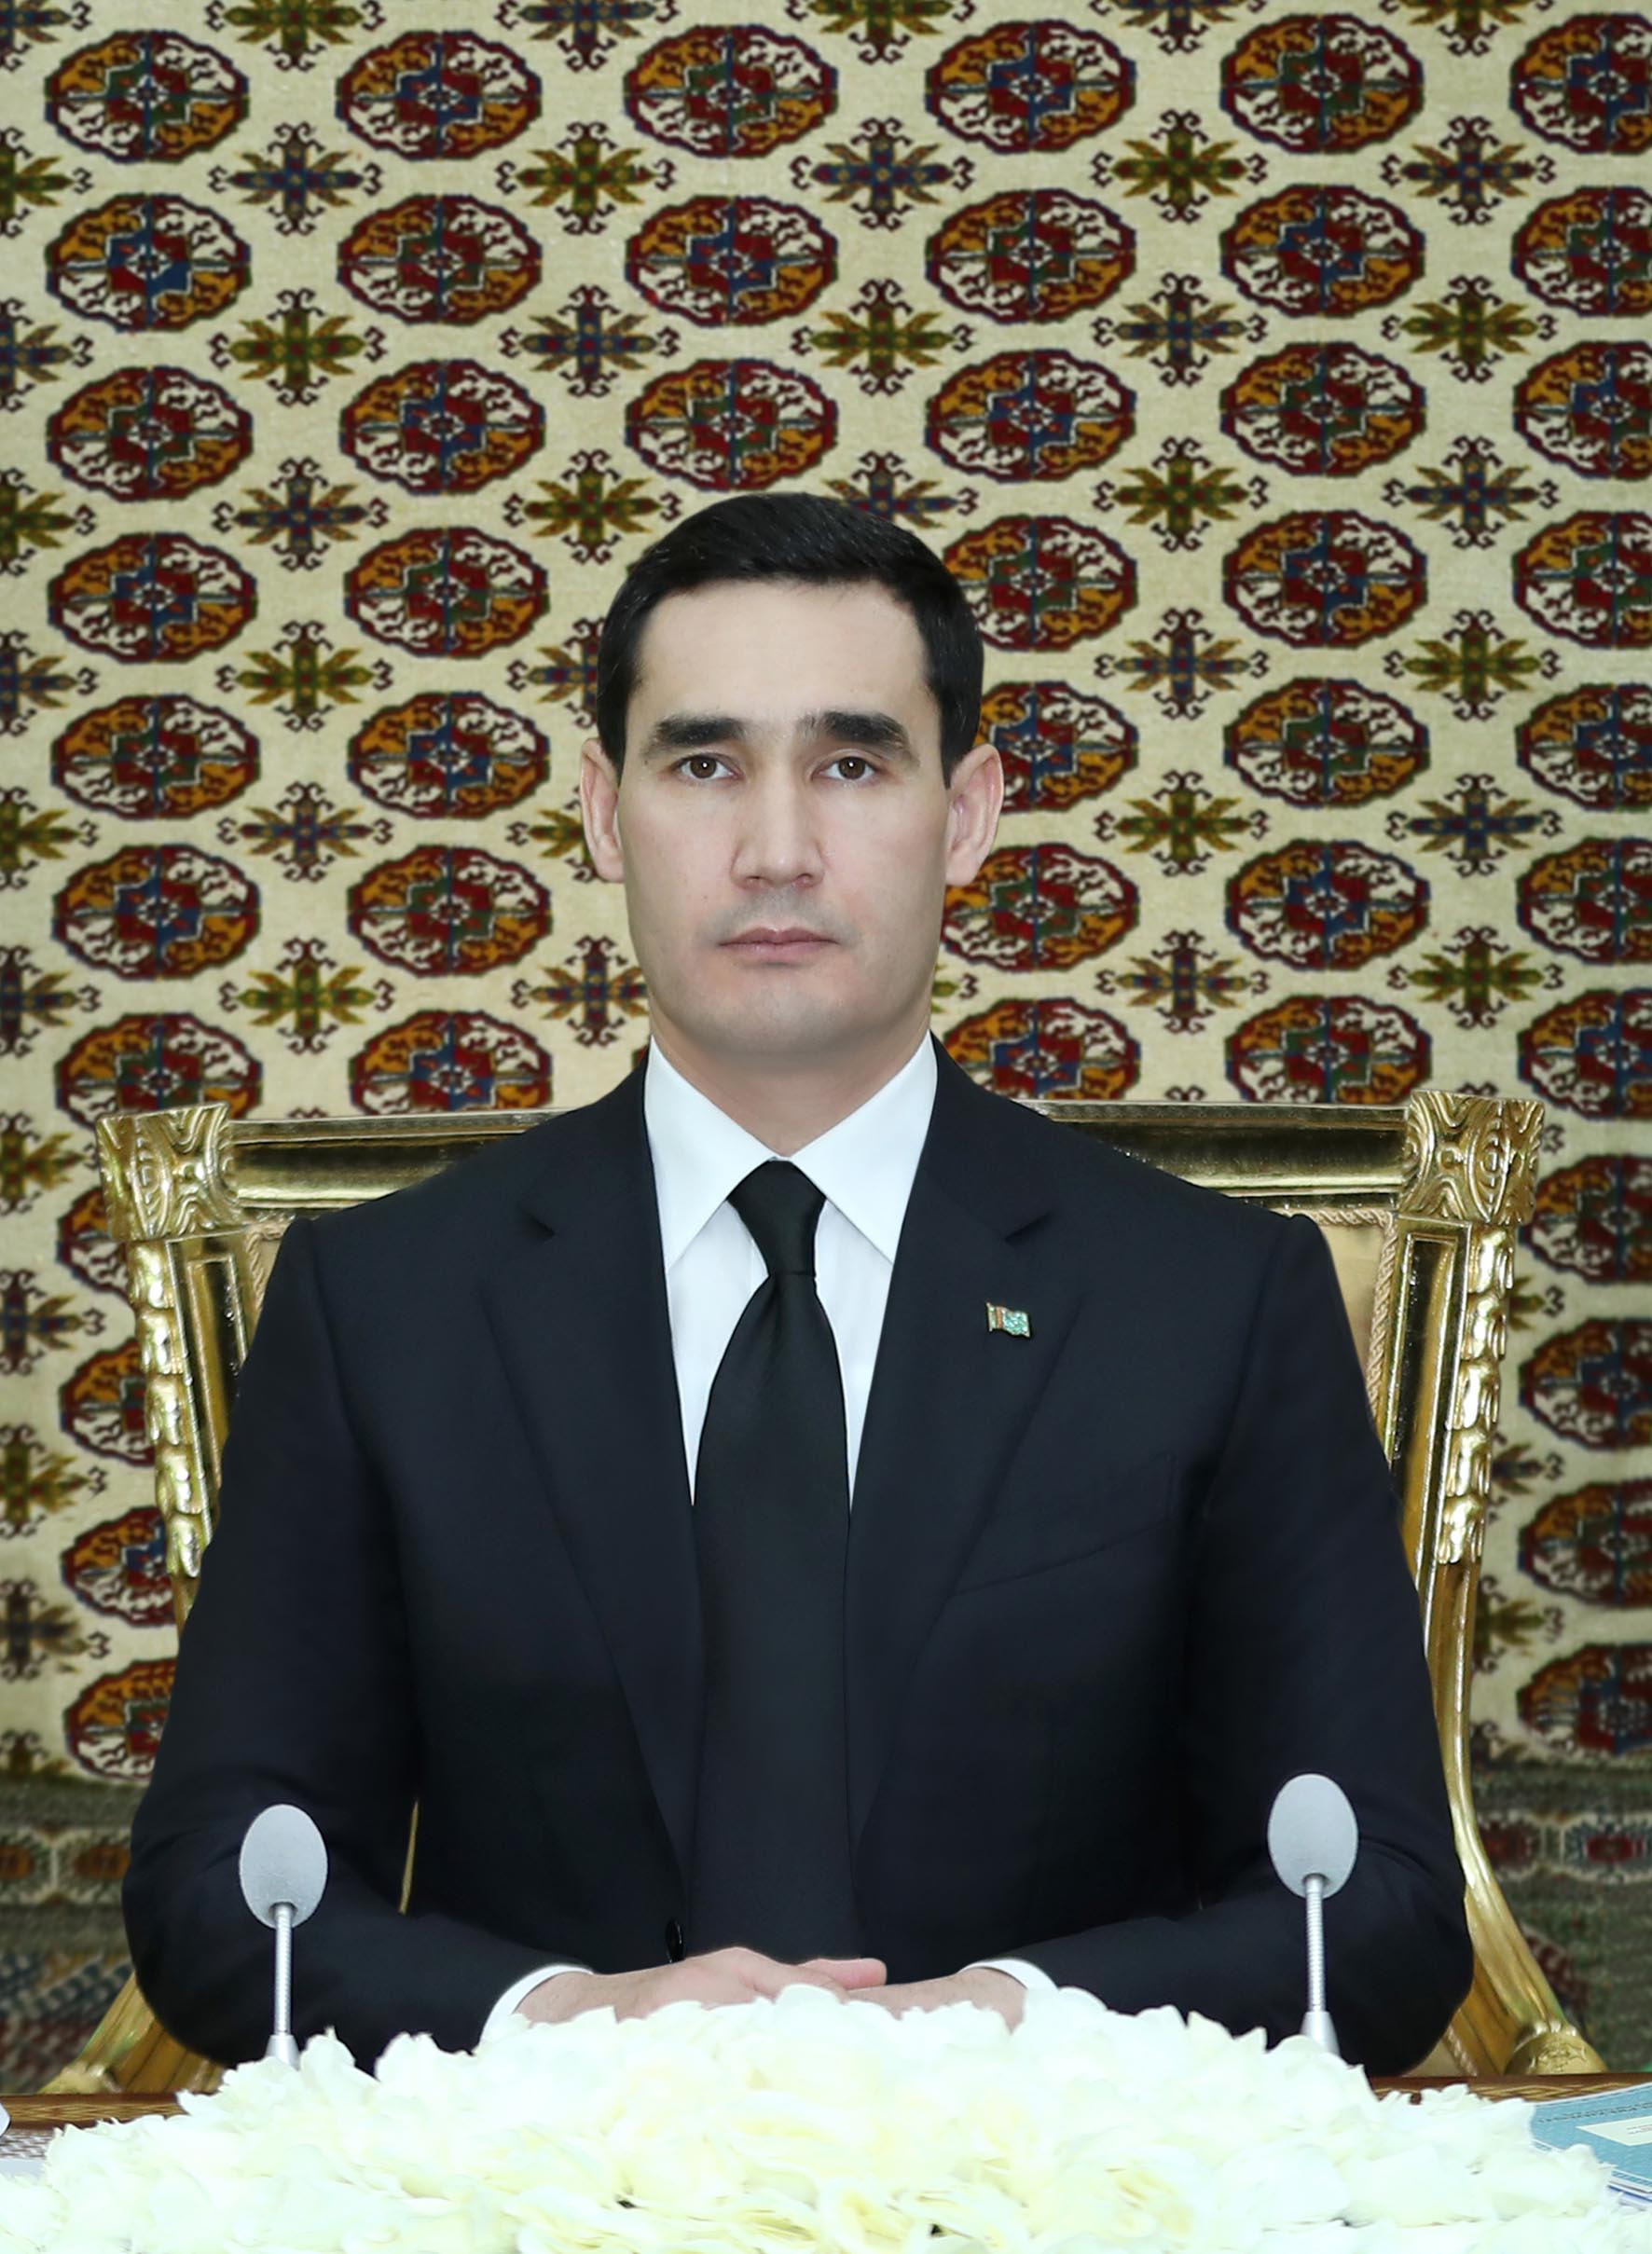 Заседание Кабинета Министров Туркменистана